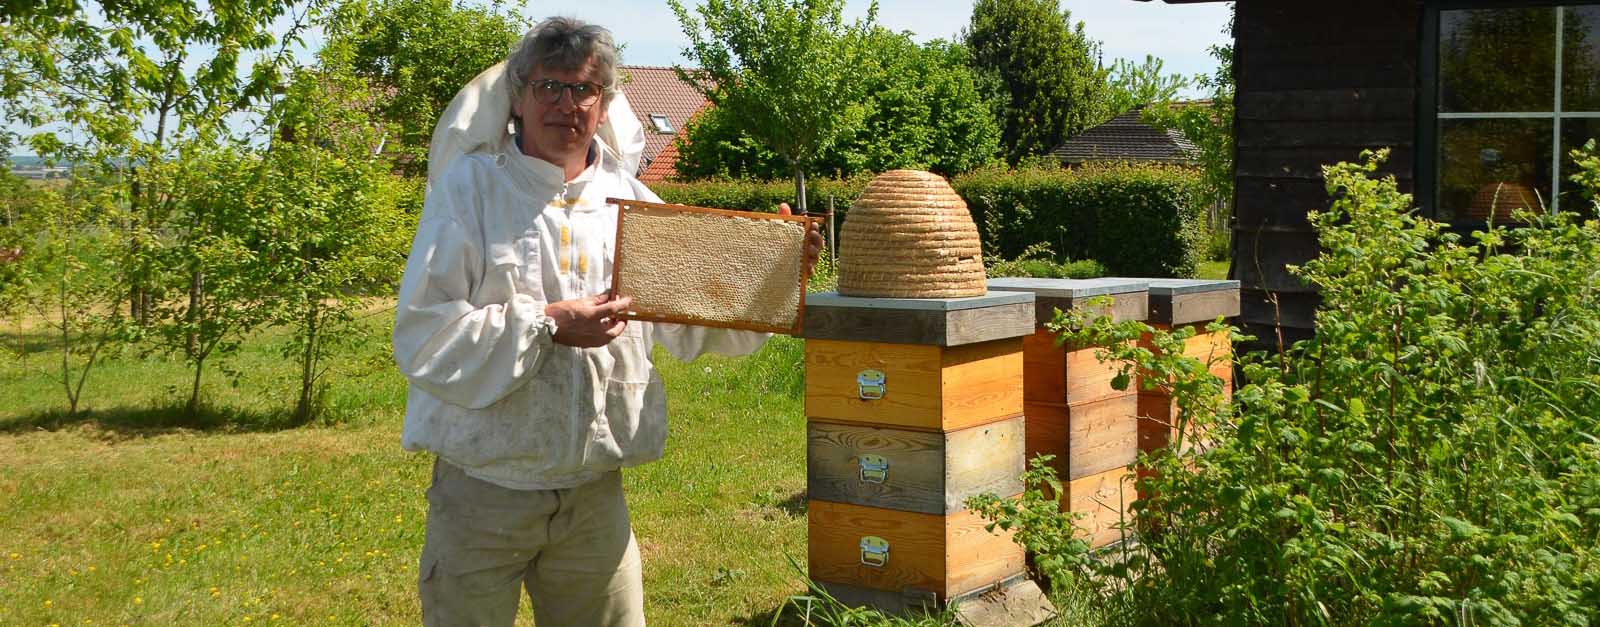 Imkereren voor beginners-Duik in de Bijenwereld met de workshops